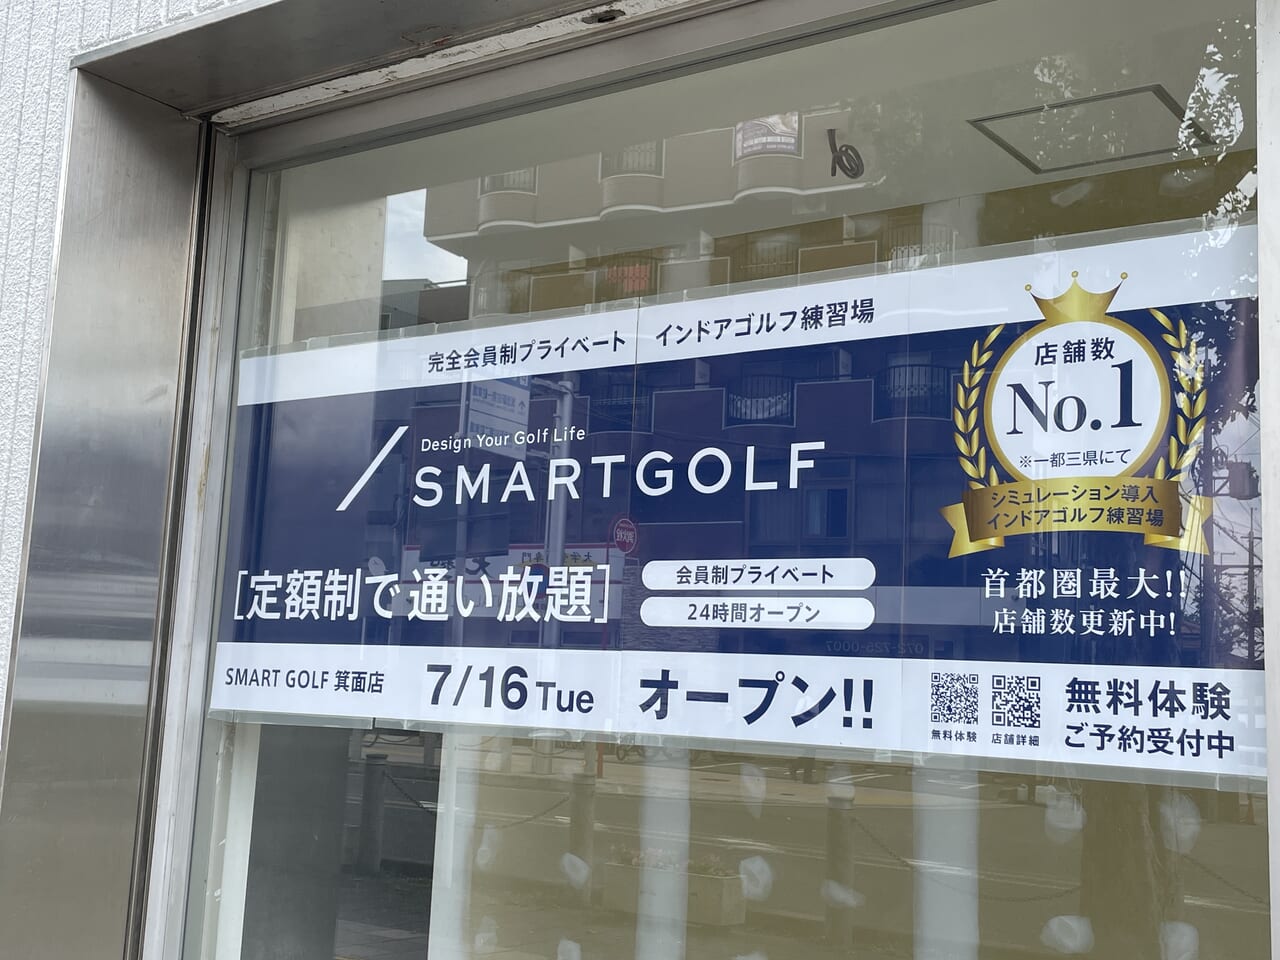 インドアゴルフ練習場「SMART GOLF 箕面店」オープン